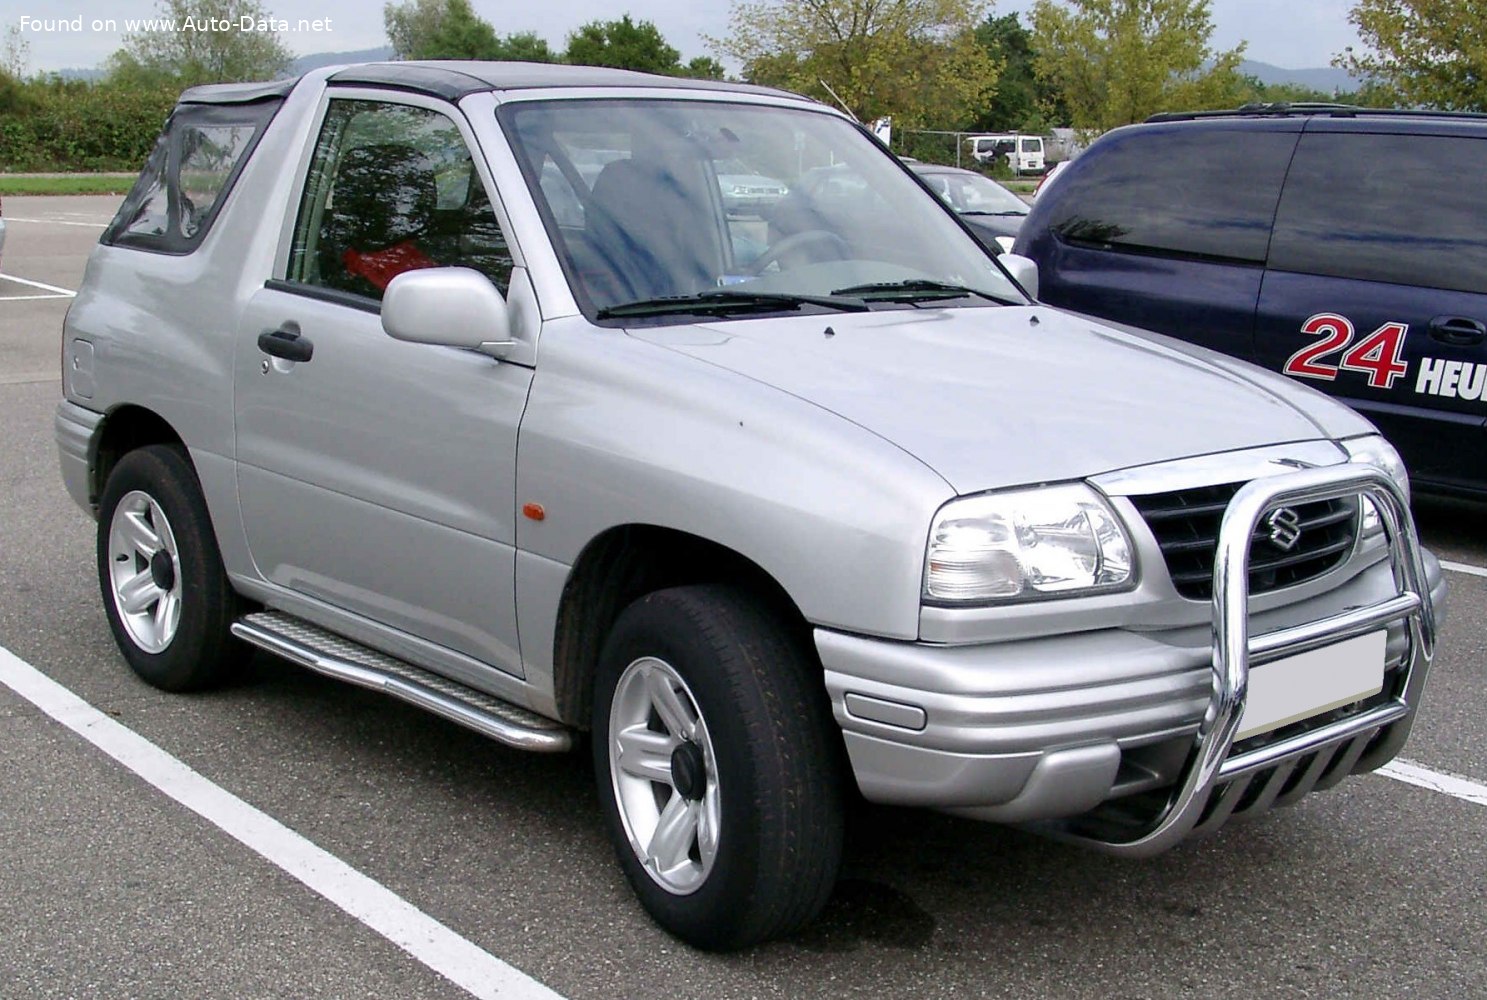 1999 Suzuki Grand Vitara Cabrio Scheda Tecnica, Consumi